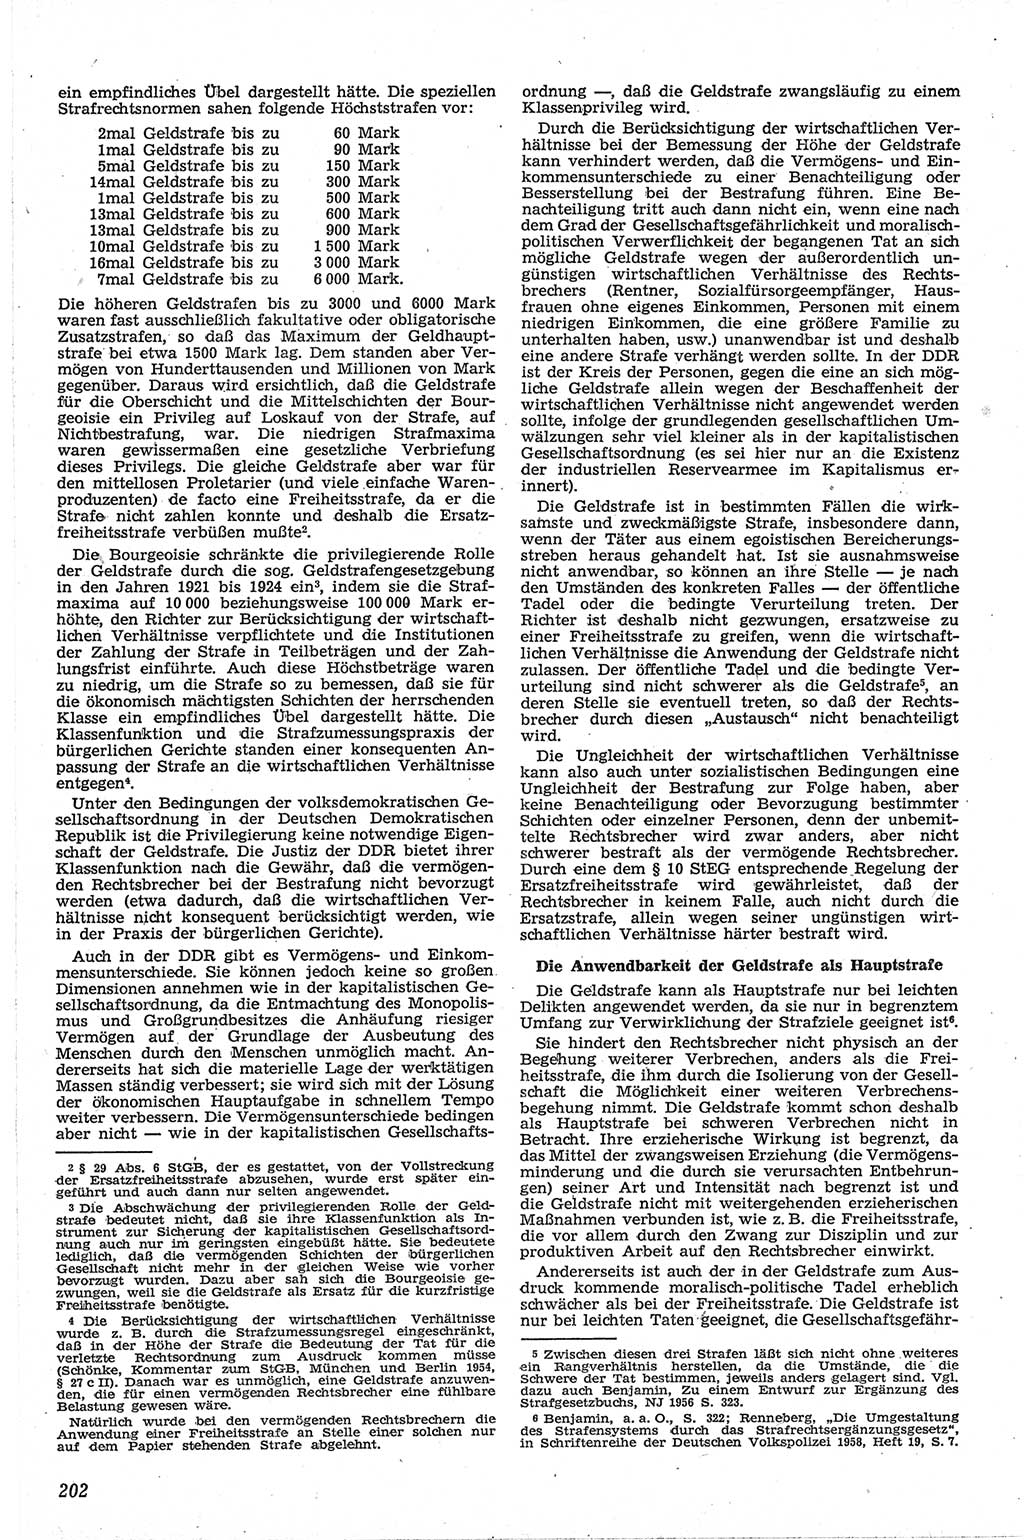 Neue Justiz (NJ), Zeitschrift für Recht und Rechtswissenschaft [Deutsche Demokratische Republik (DDR)], 13. Jahrgang 1959, Seite 202 (NJ DDR 1959, S. 202)